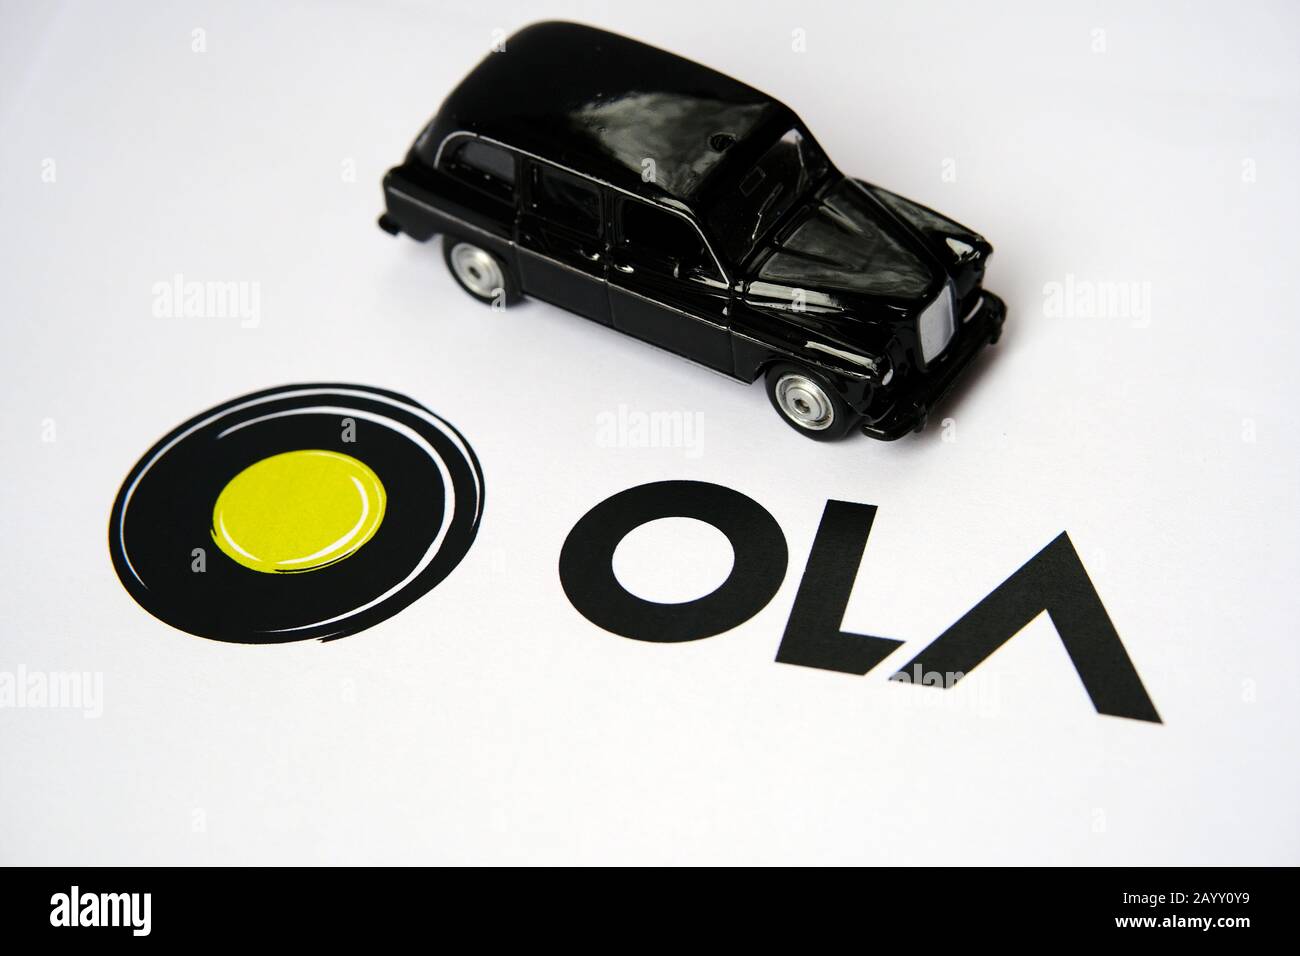 OLA-App-Logo auf Papierbroschüre und schwarze Kabine auf dem verschwommenen Hintergrund. OLA-Kabinen sind ein Unternehmen für die Mitfahrgelegenheit. Selektiver Fokus. Stockfoto